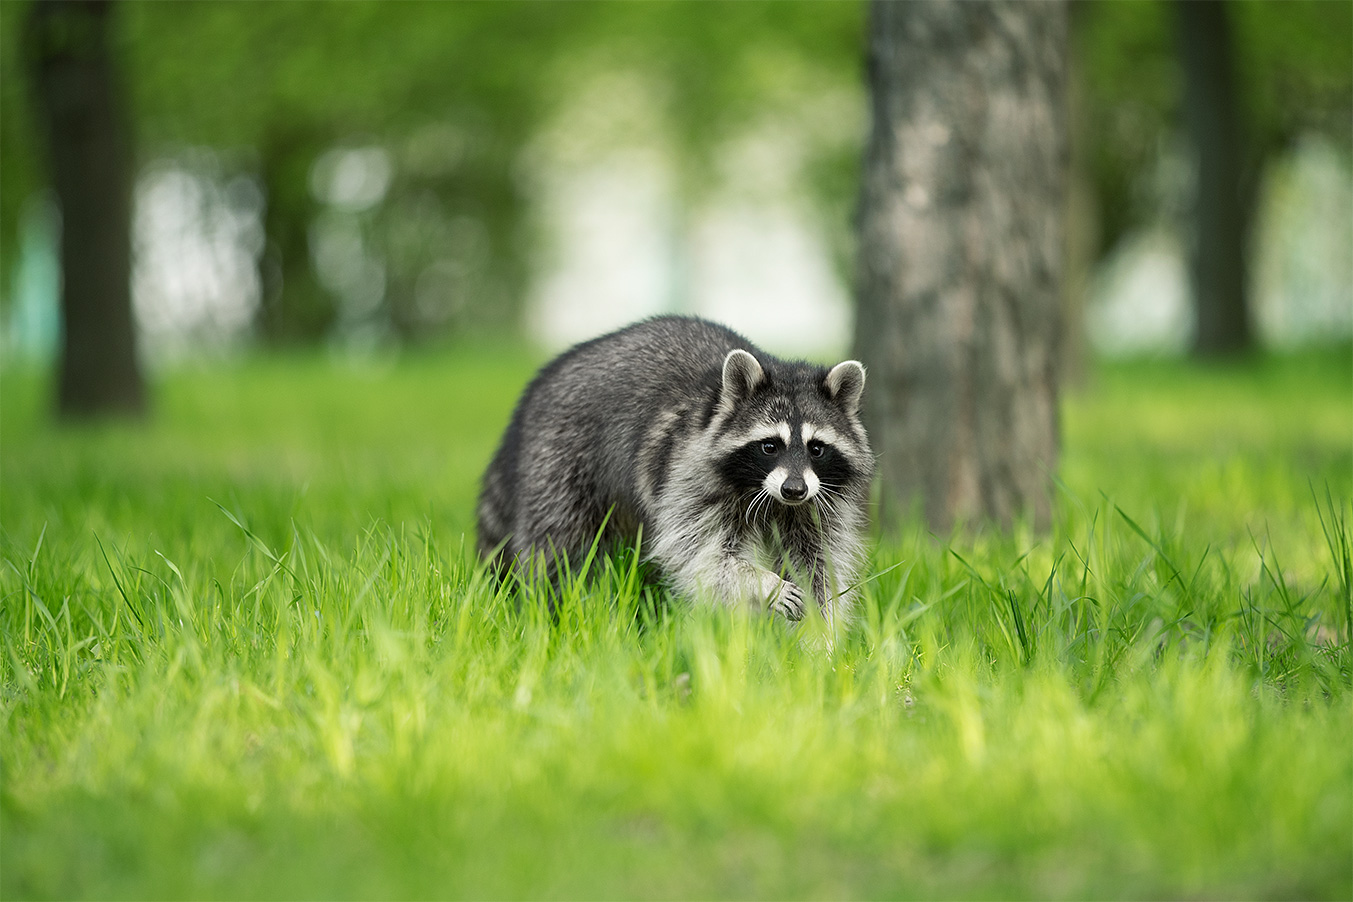 Raccoon running across a field of grass